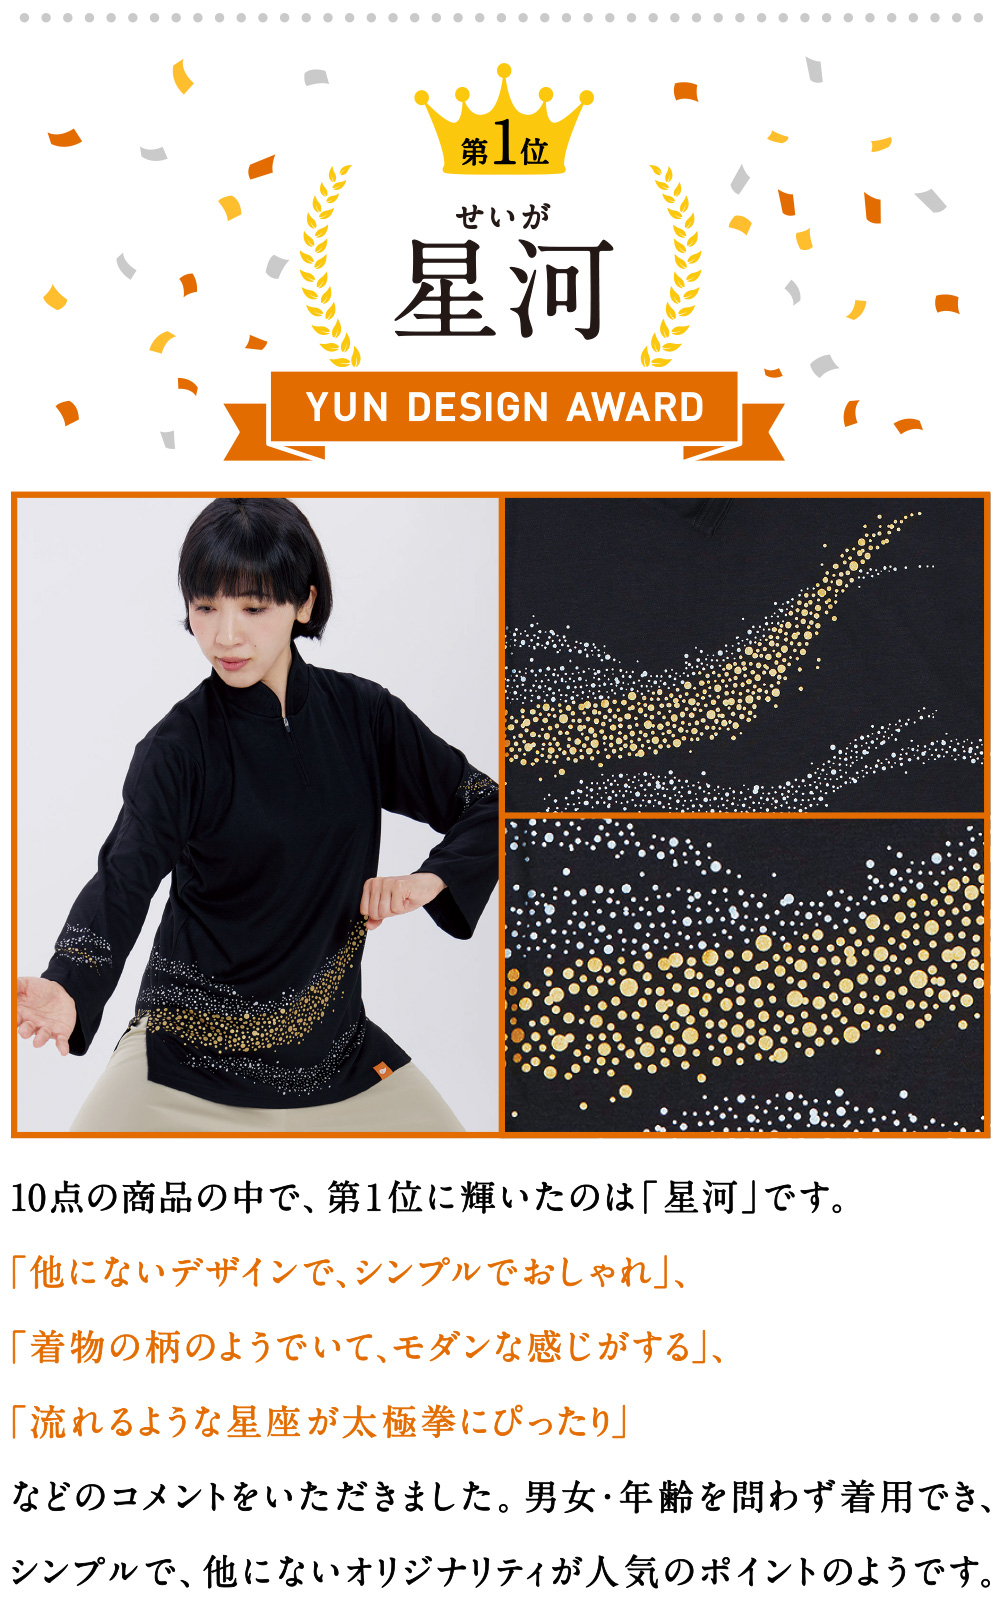 YUN Design Award